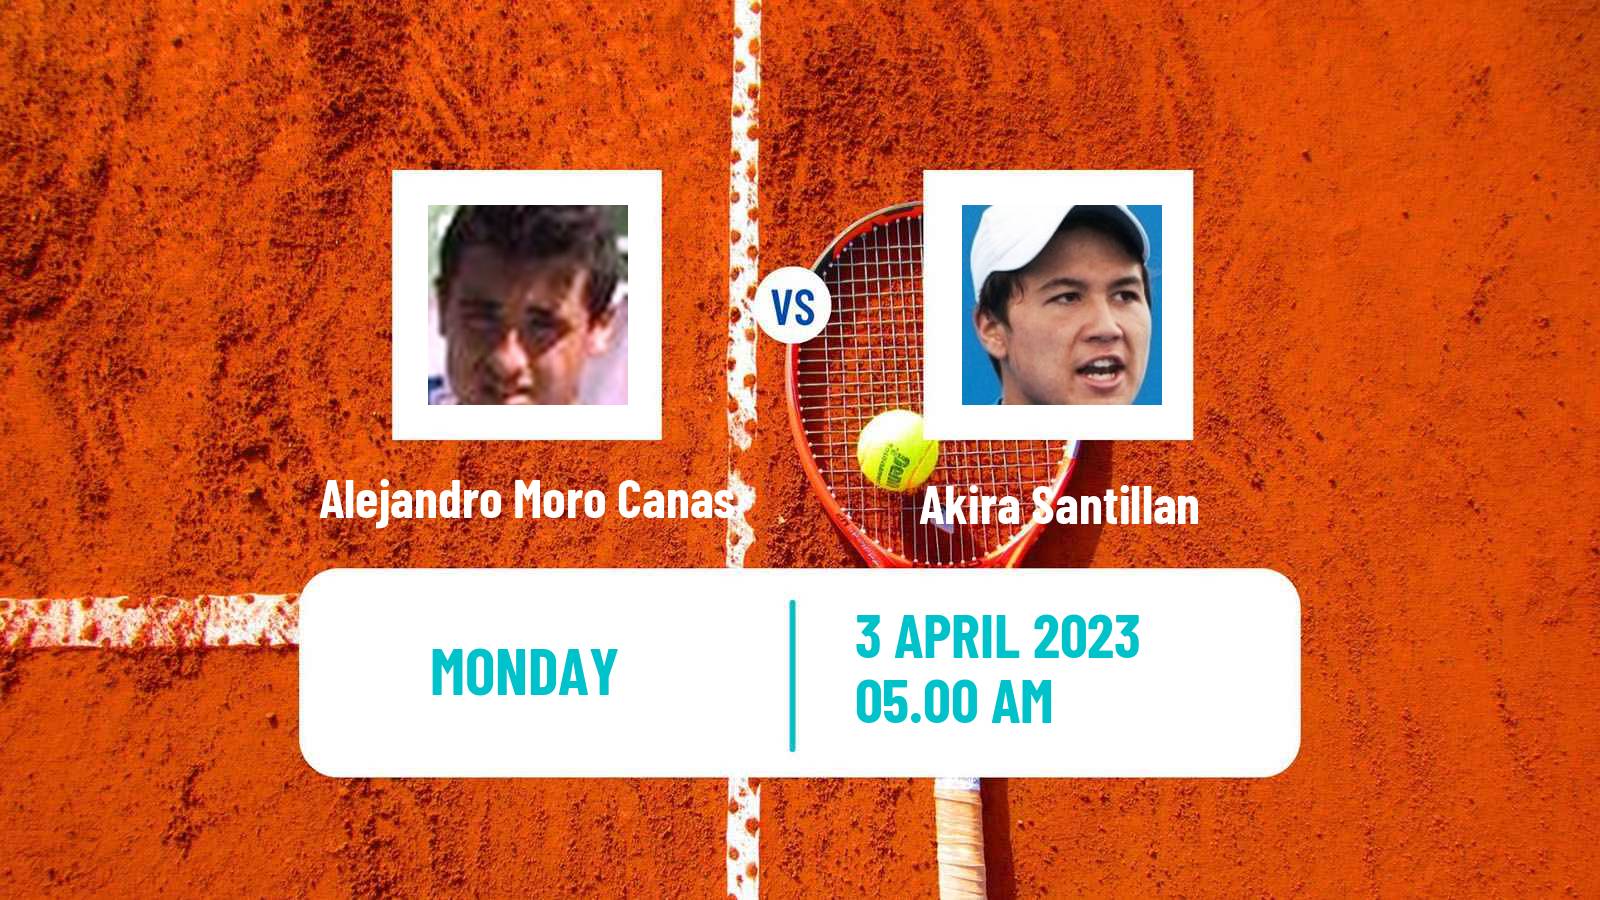 Tennis ATP Challenger Alejandro Moro Canas - Akira Santillan